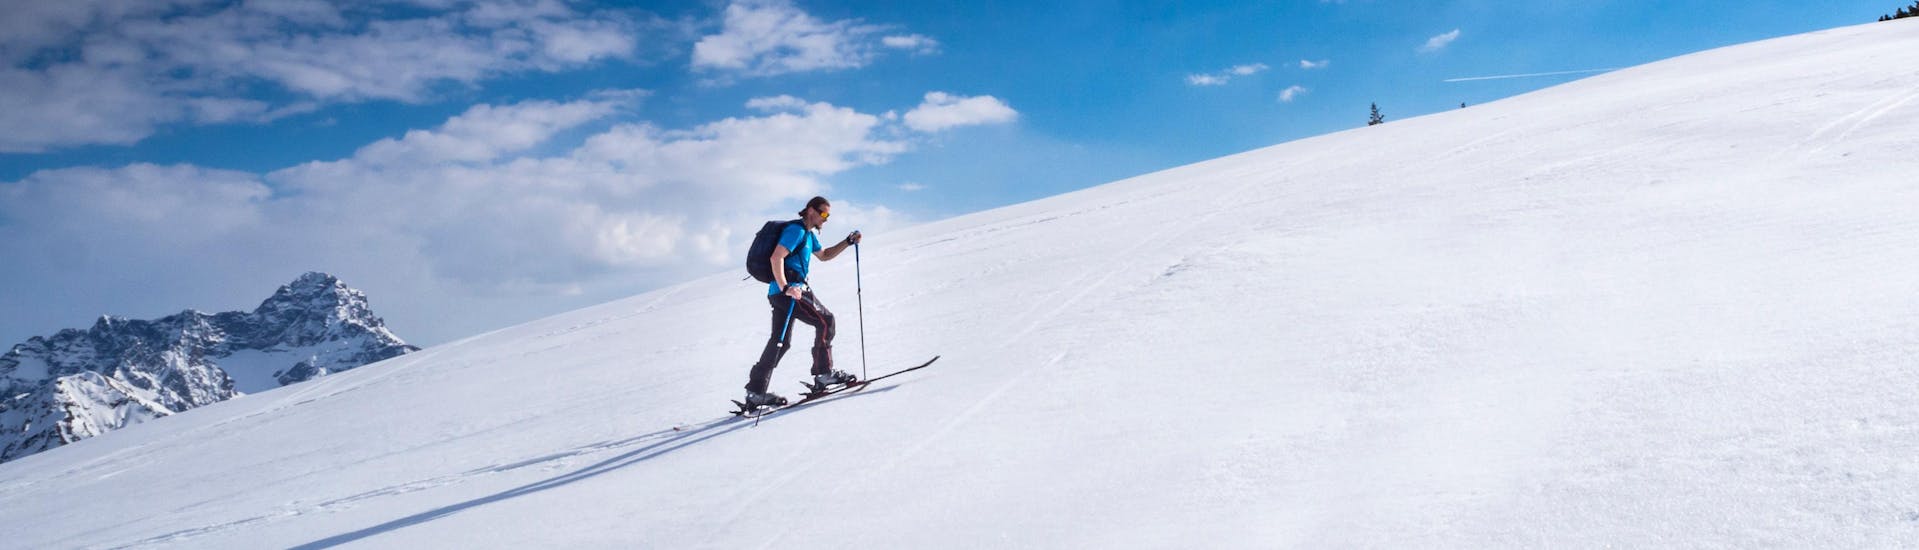 Ein Skitourengeher steigt an einem sonnigen Tag die Piste in Riezlern, Österreich, hinauf.